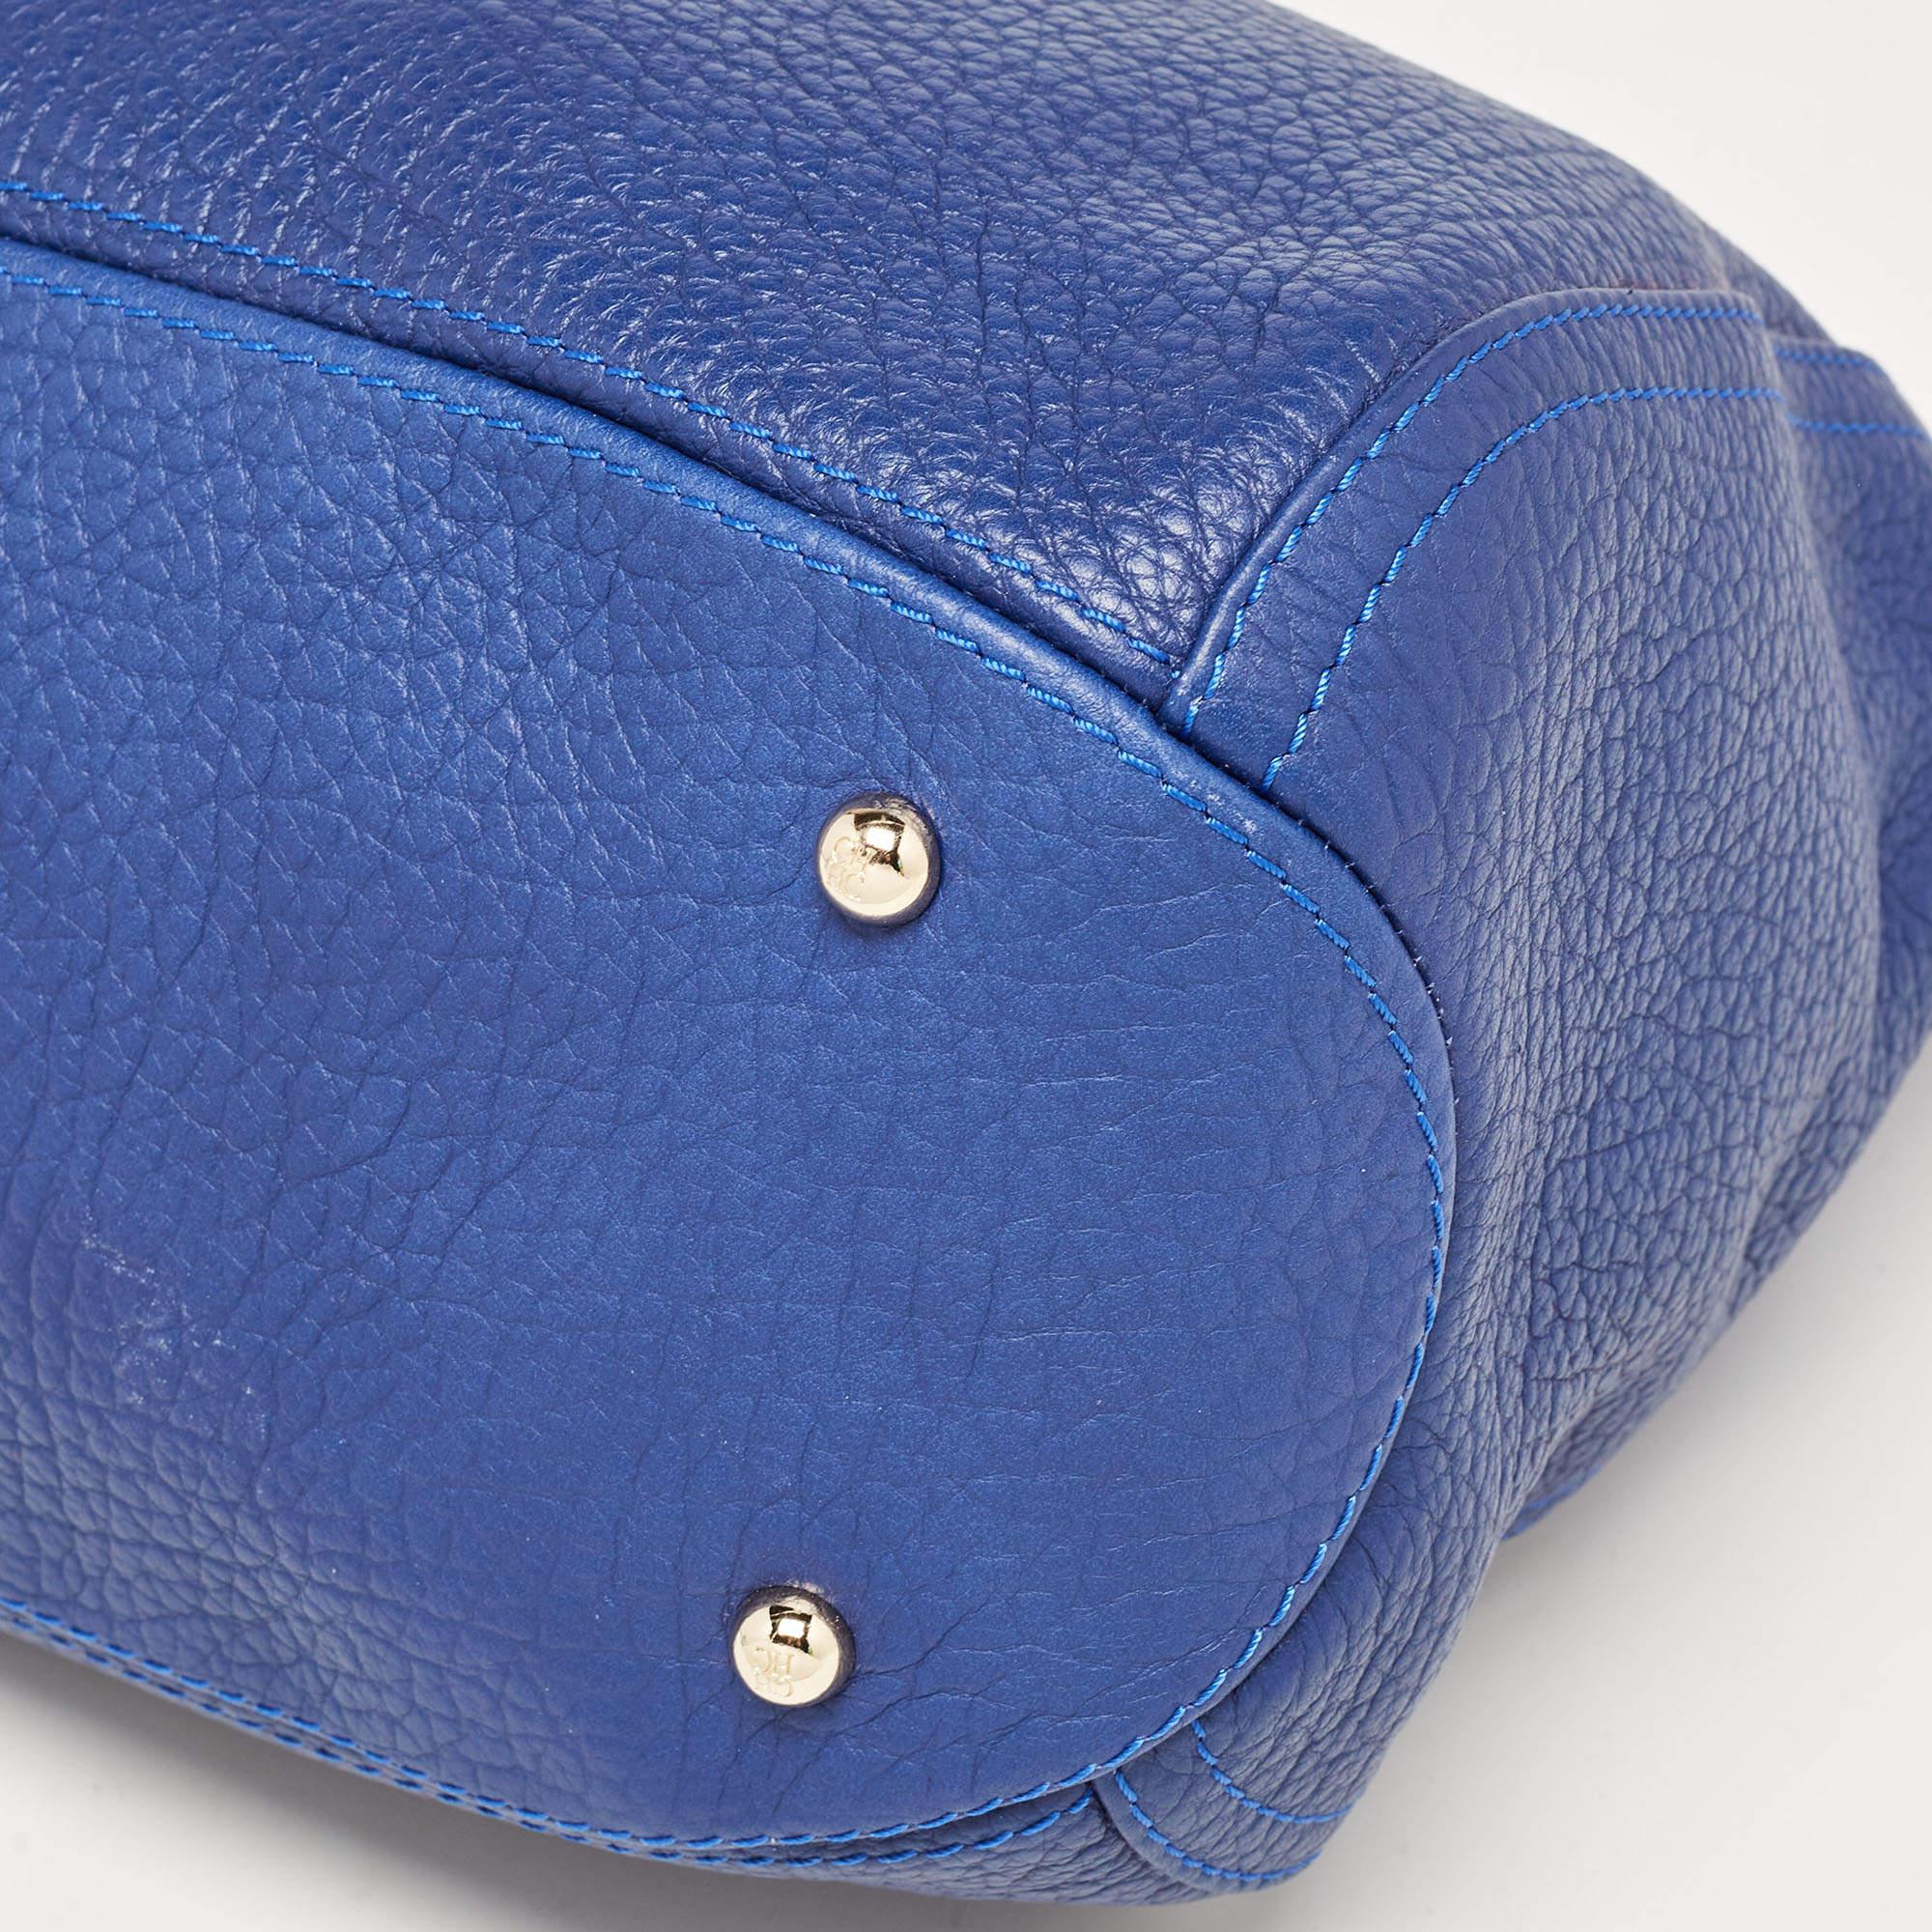 Carolina Herrera Blue Leather Chain Tassel Hobo In Good Condition For Sale In Dubai, Al Qouz 2